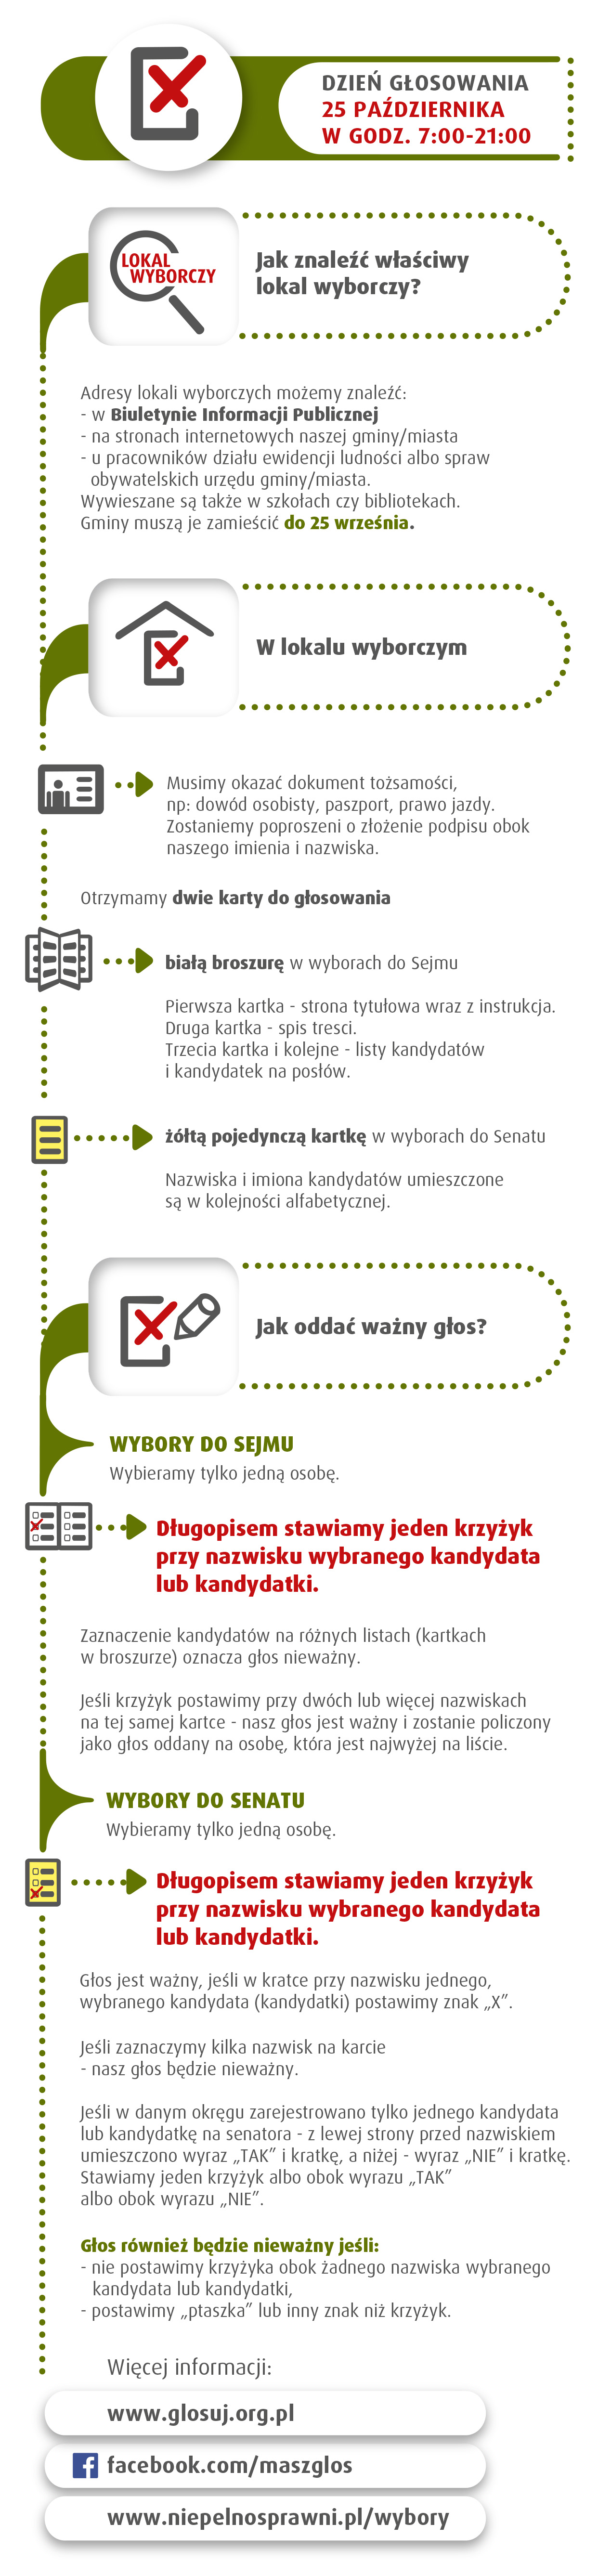 MGMW_Wybory2015_infograf_DzienGlosowania_5